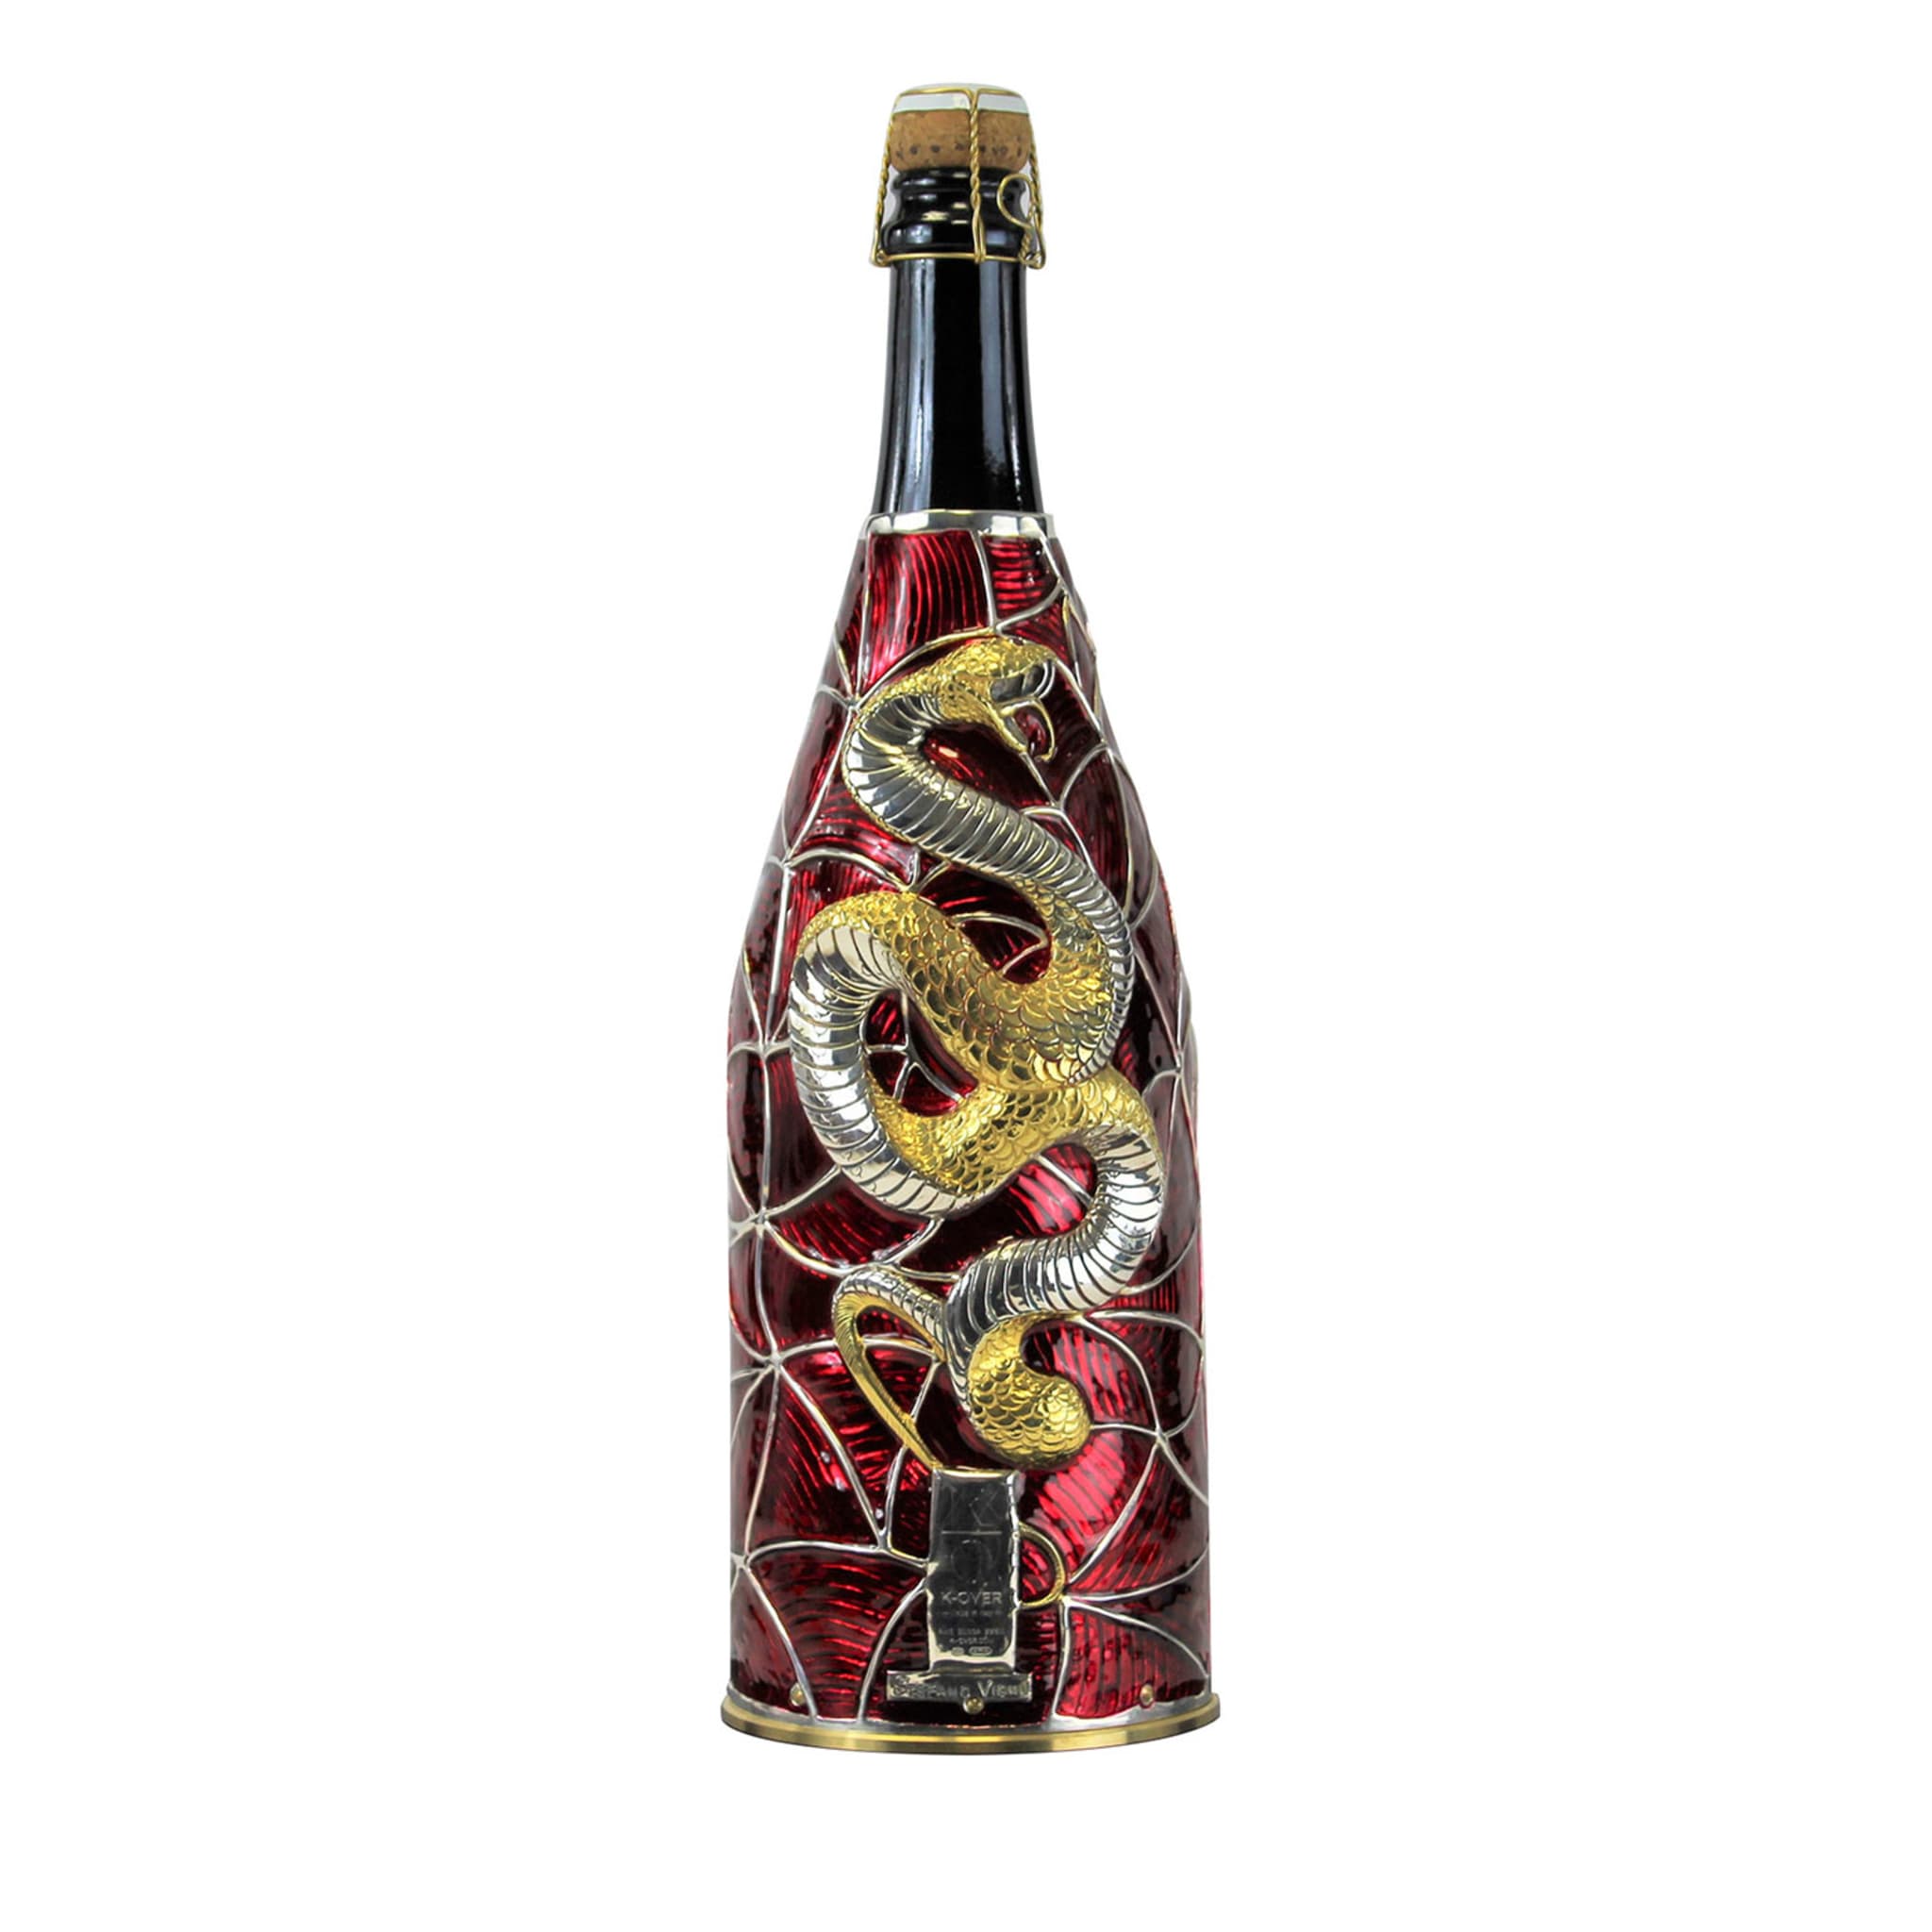 Copri champagne rubino - Vista principale